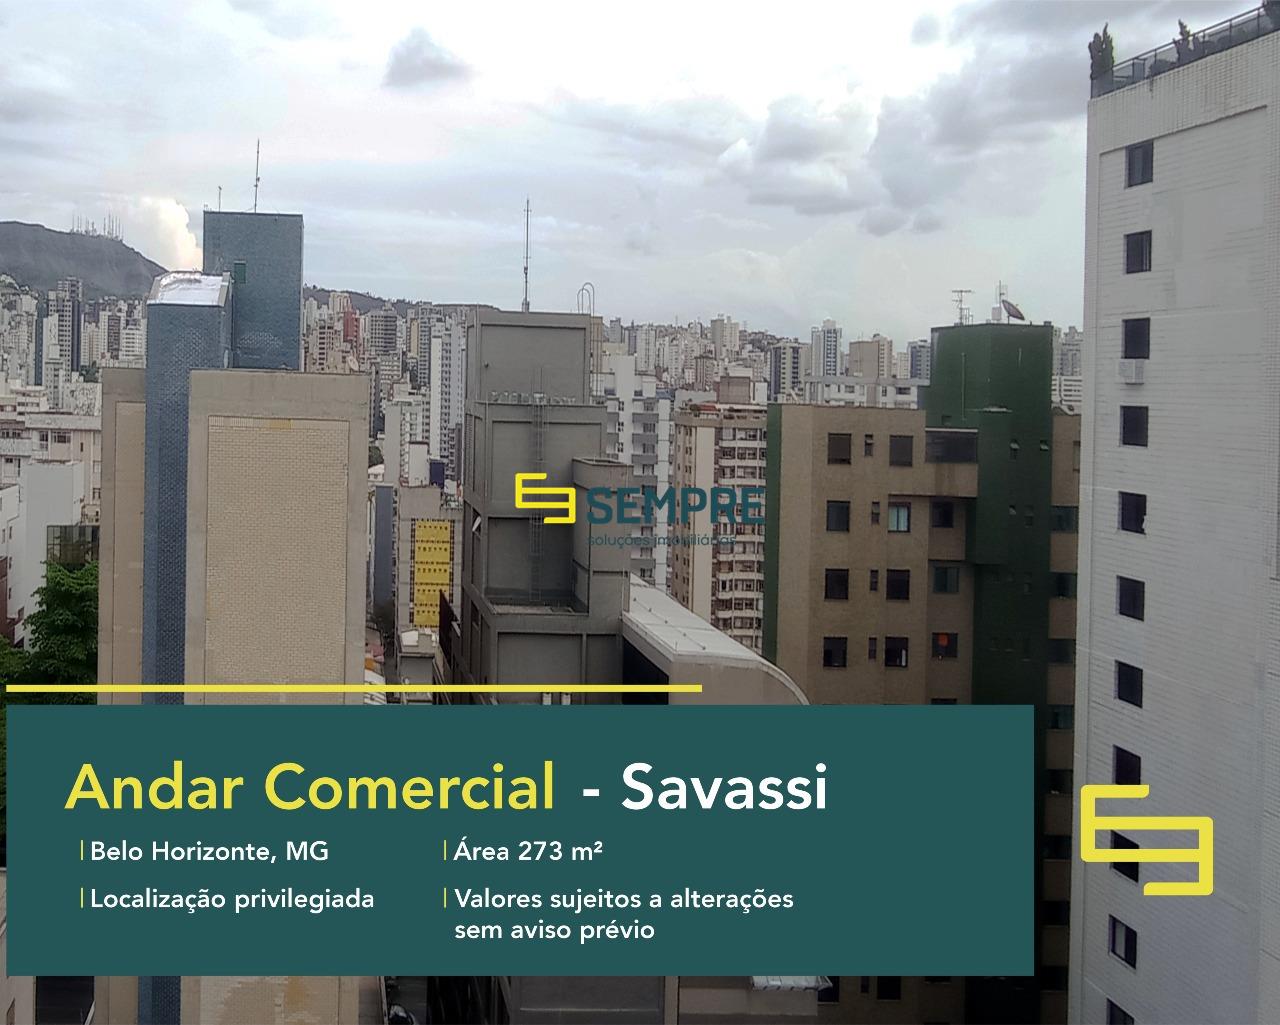 Andar corrido na Savassi para locação em Belo Horizonte, excelente localização. O estabelecimento comercial conta com área de 273 m².